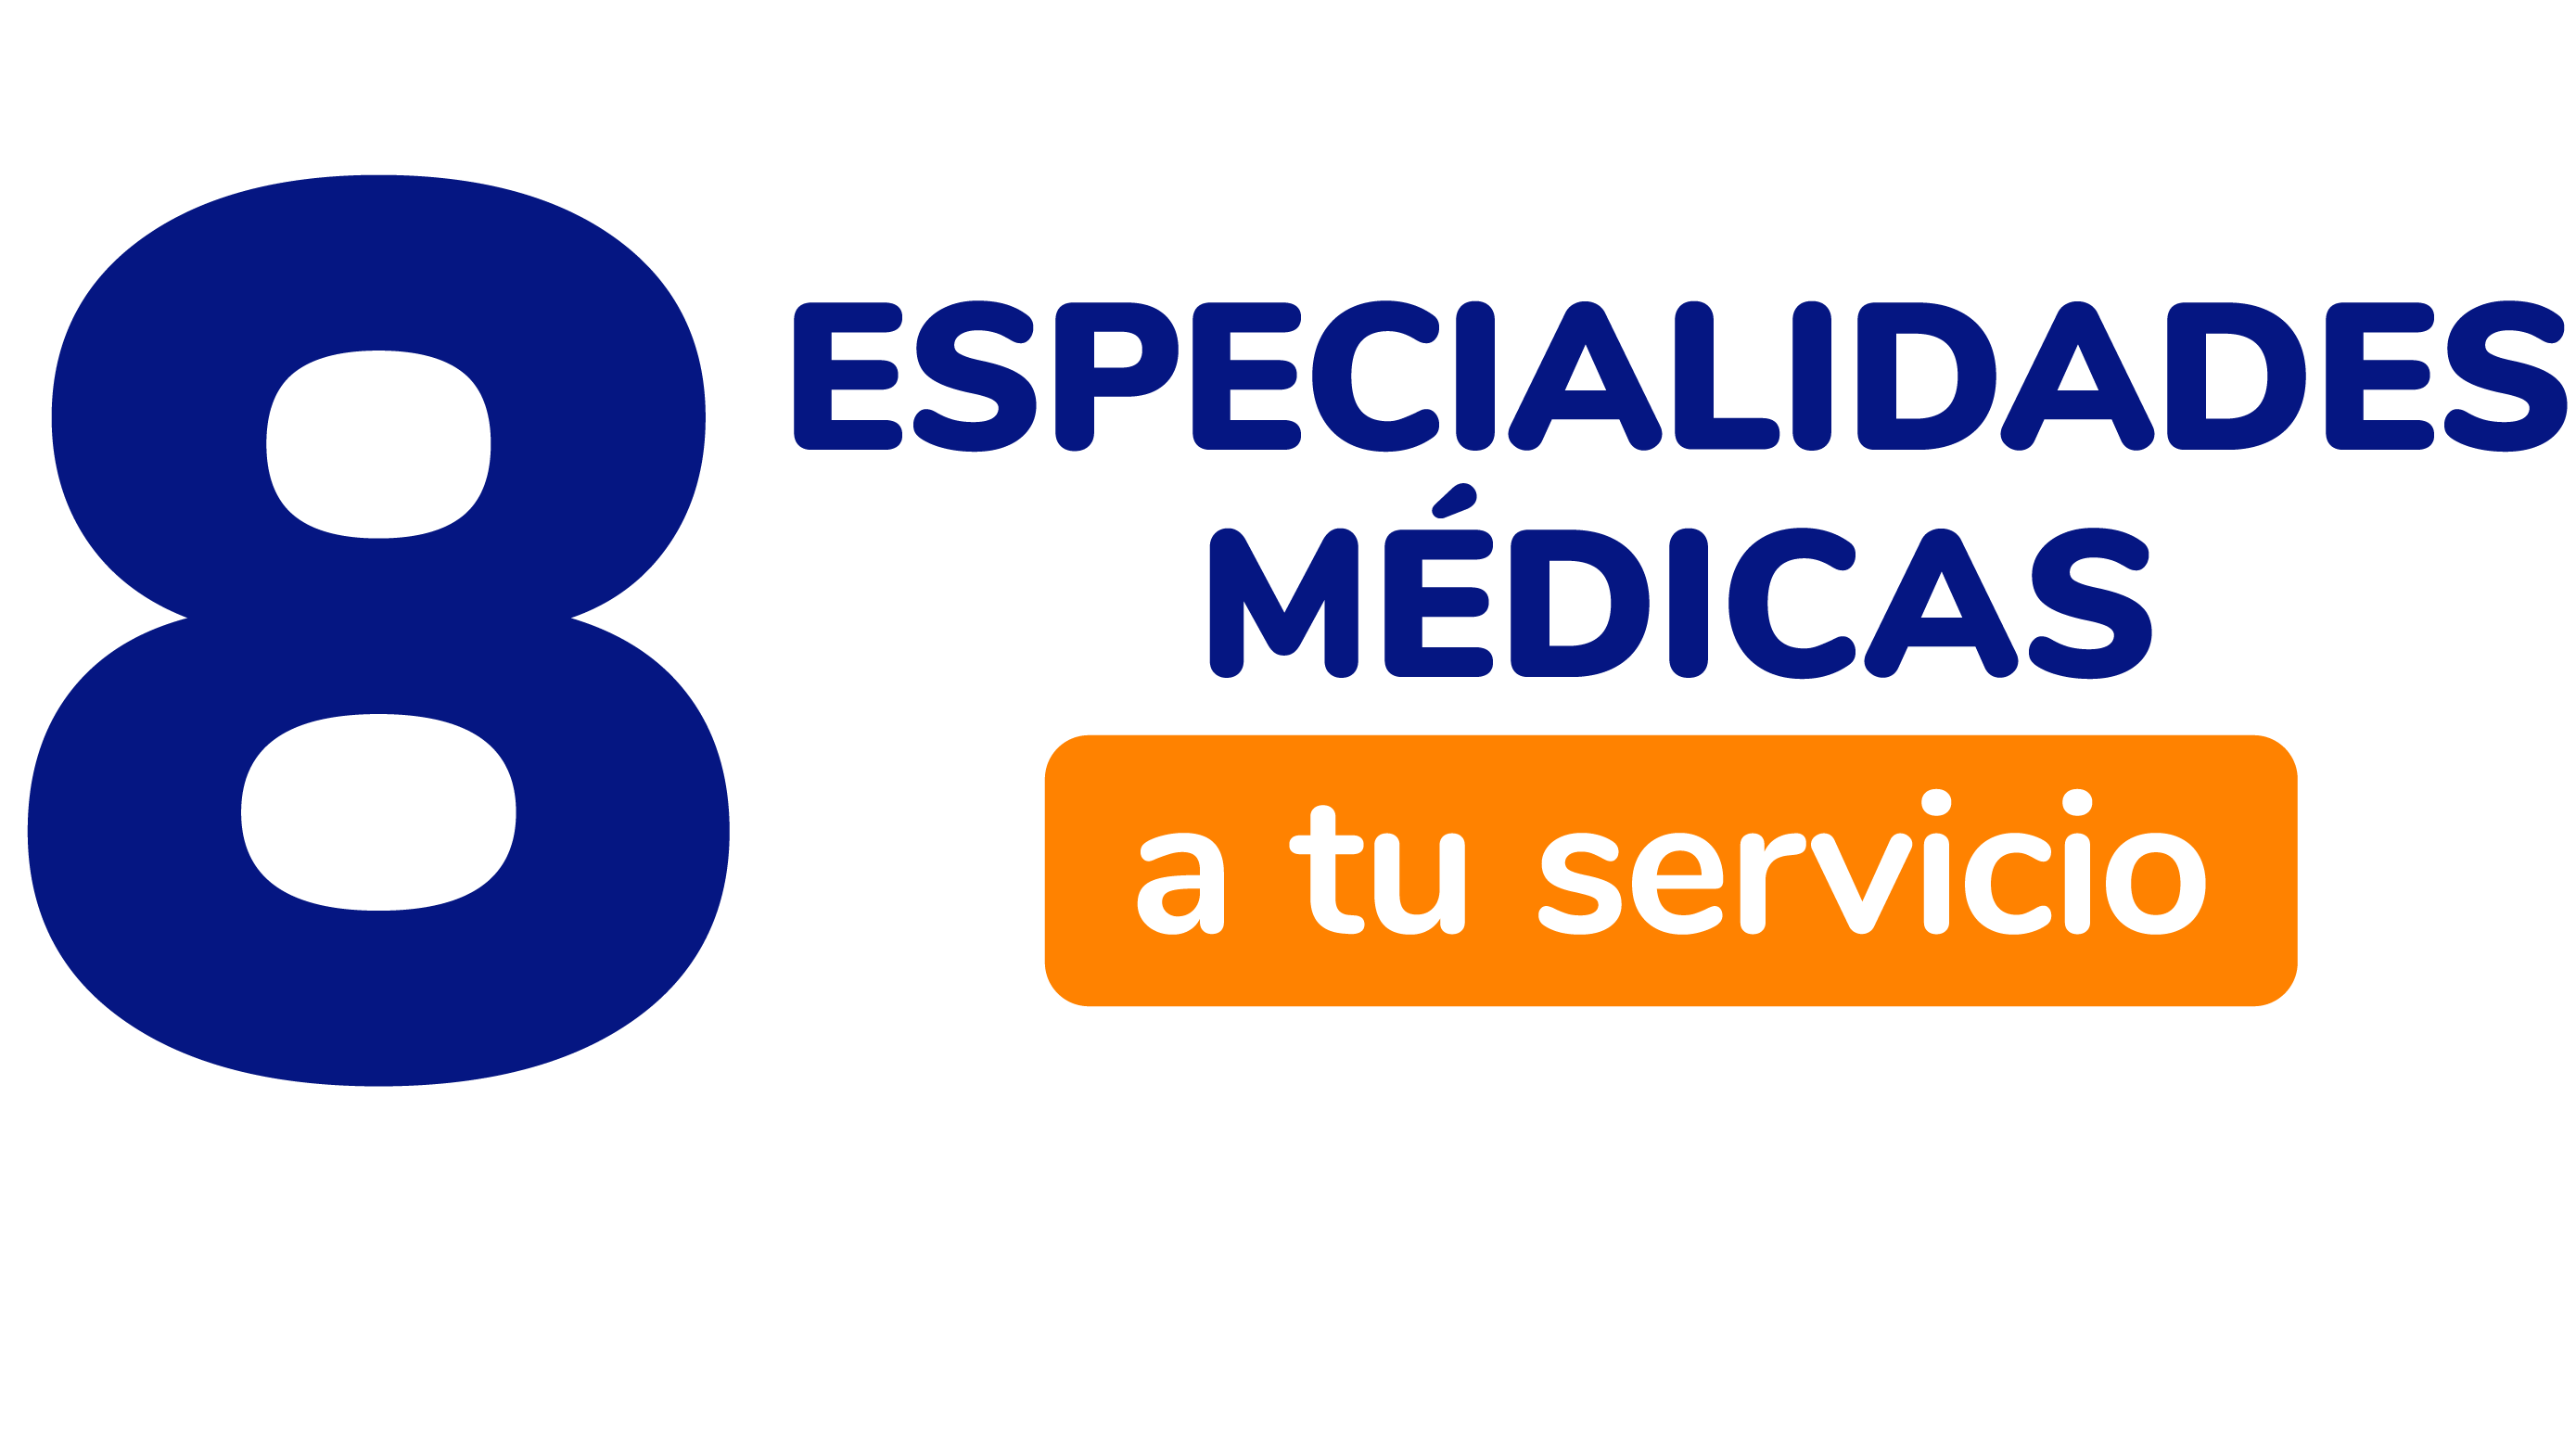 8 especialidades médicas